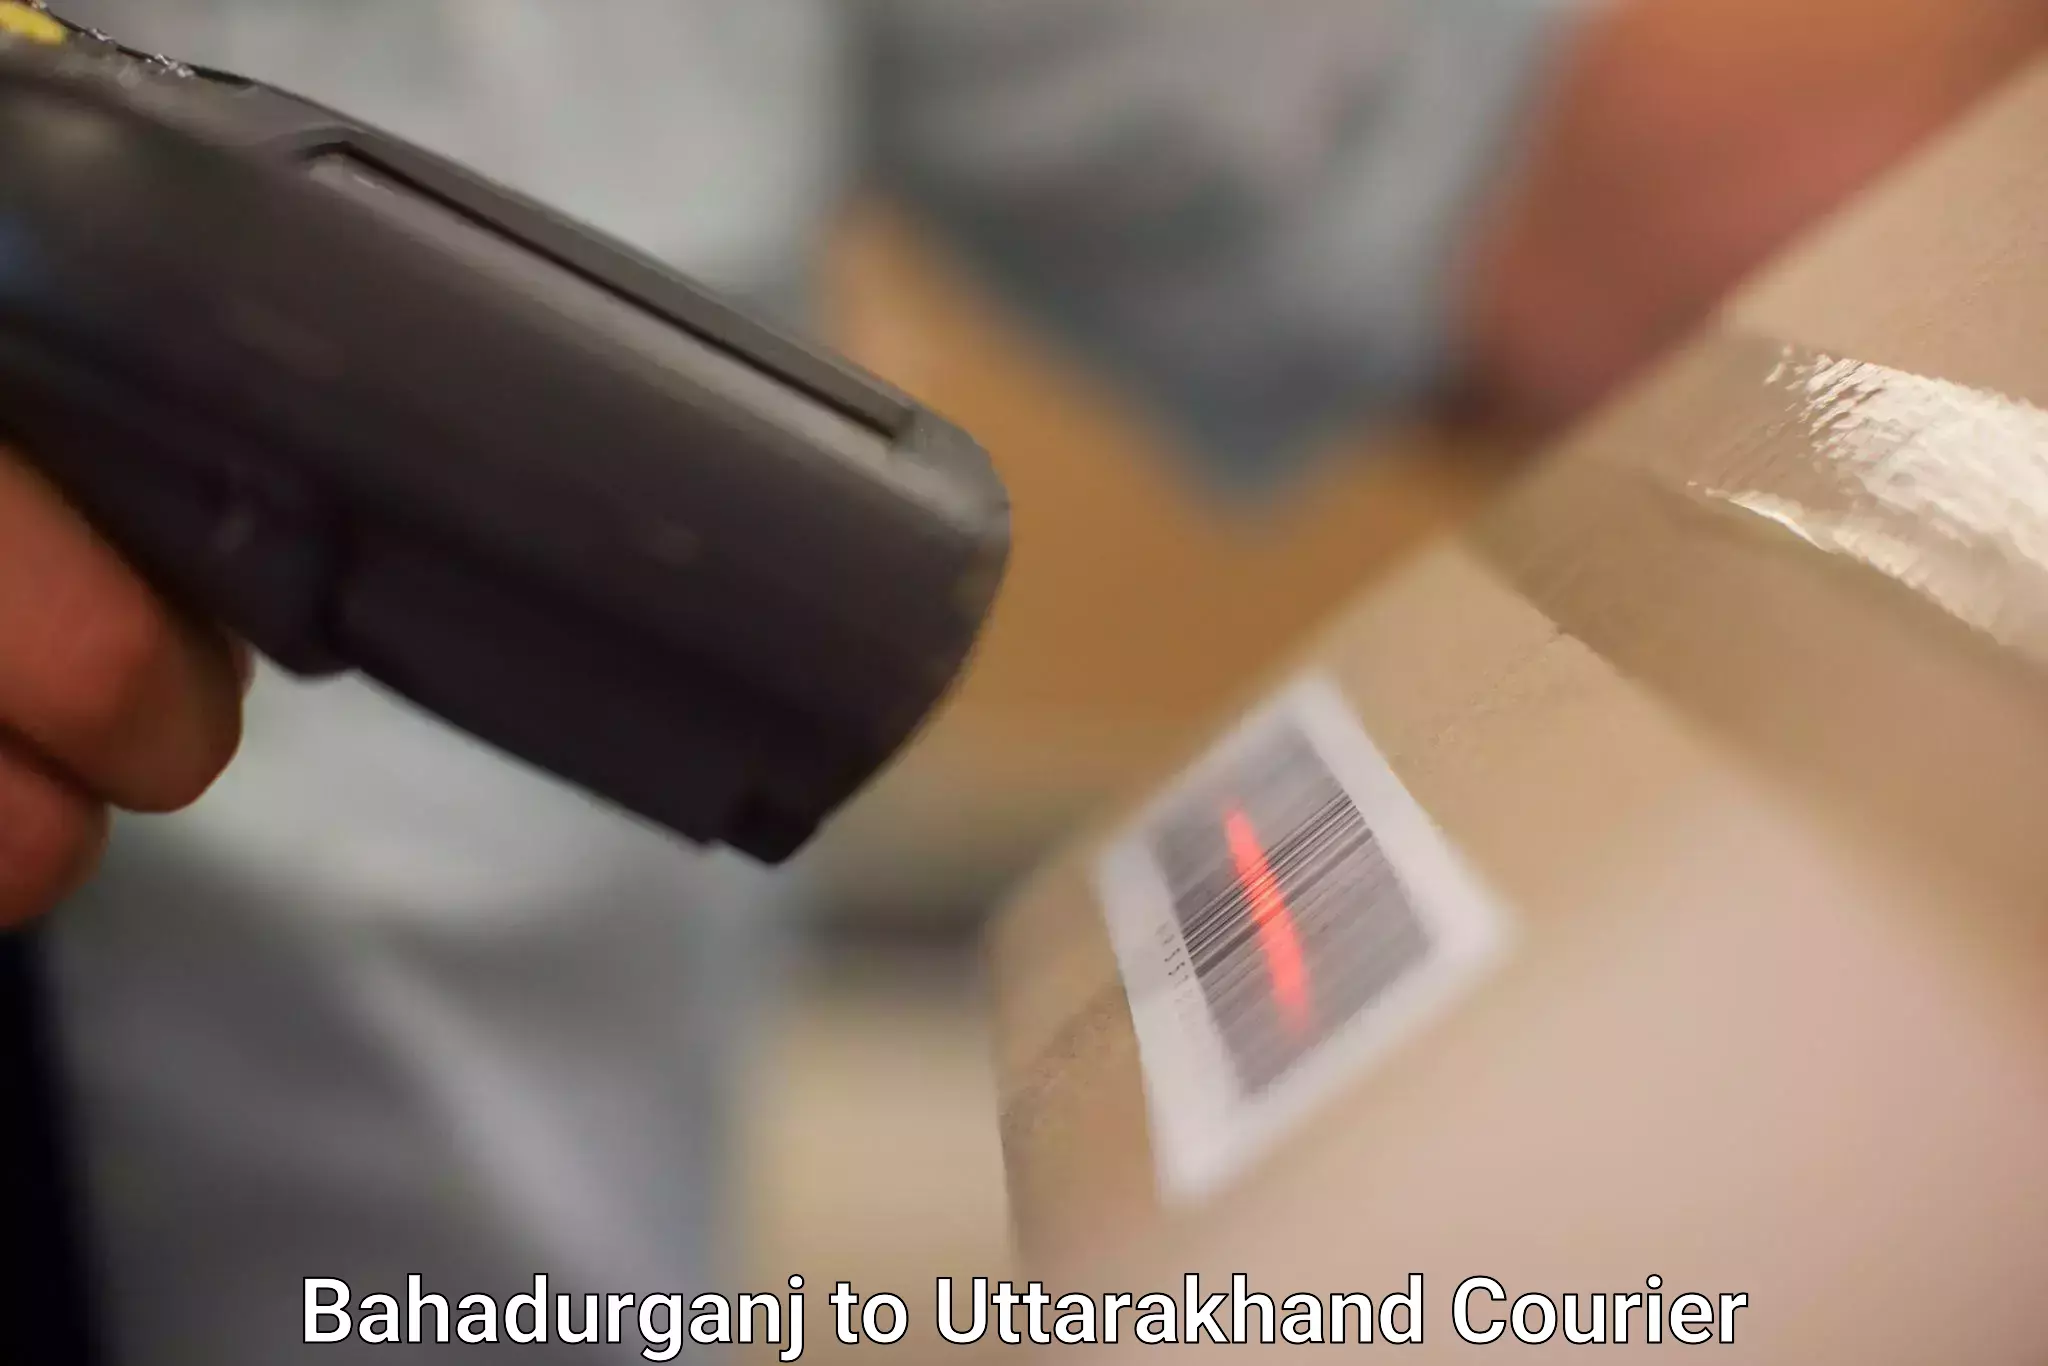 Flexible parcel services Bahadurganj to IIT Roorkee